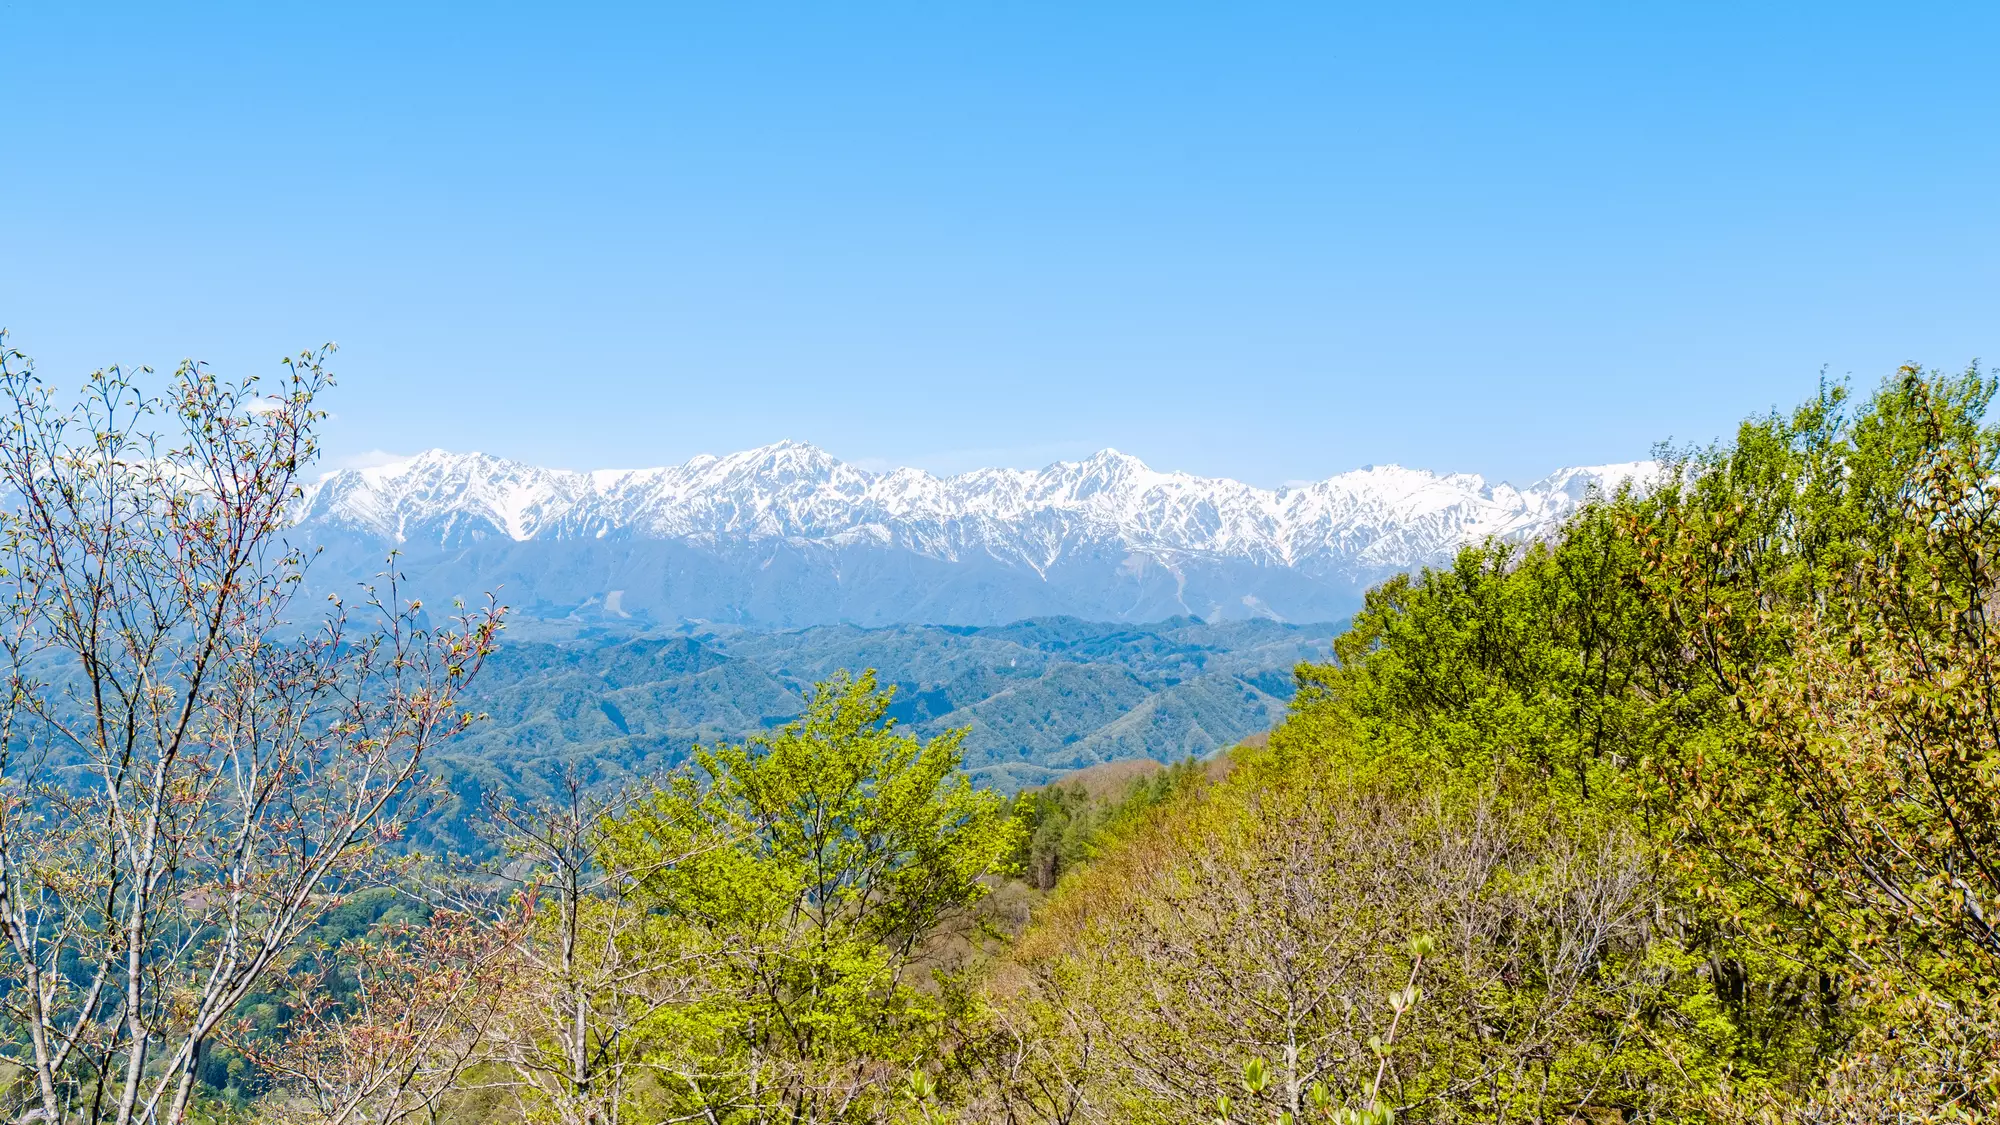 【日帰り登山】信州の山を見渡す360度の絶景。初心者も楽しめる虫倉山の難易度別登山ルート紹介